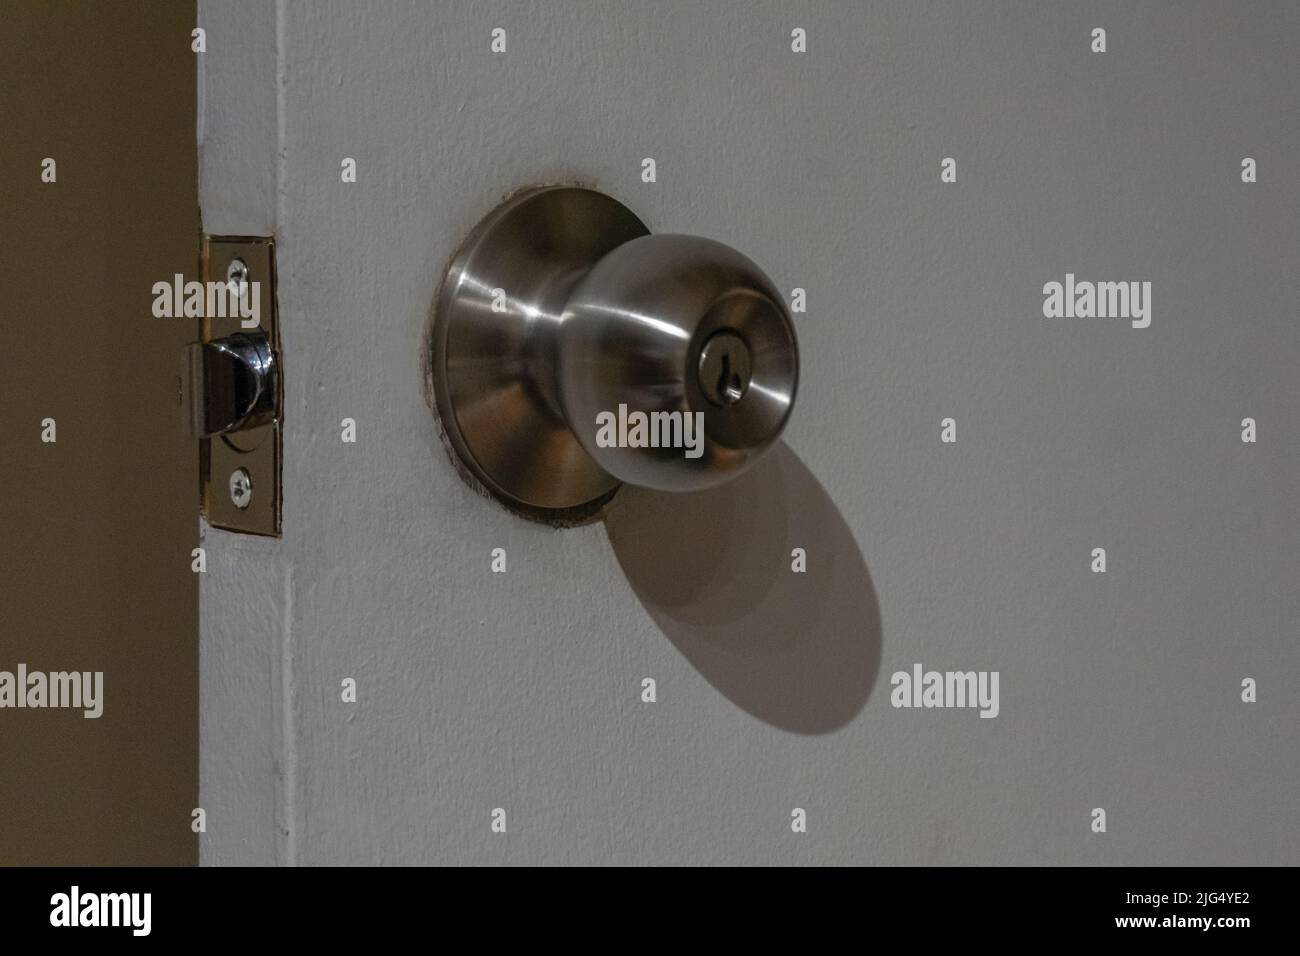 Close view of a round stainless steel door knob on a white wooden door. Door open. Stock Photo